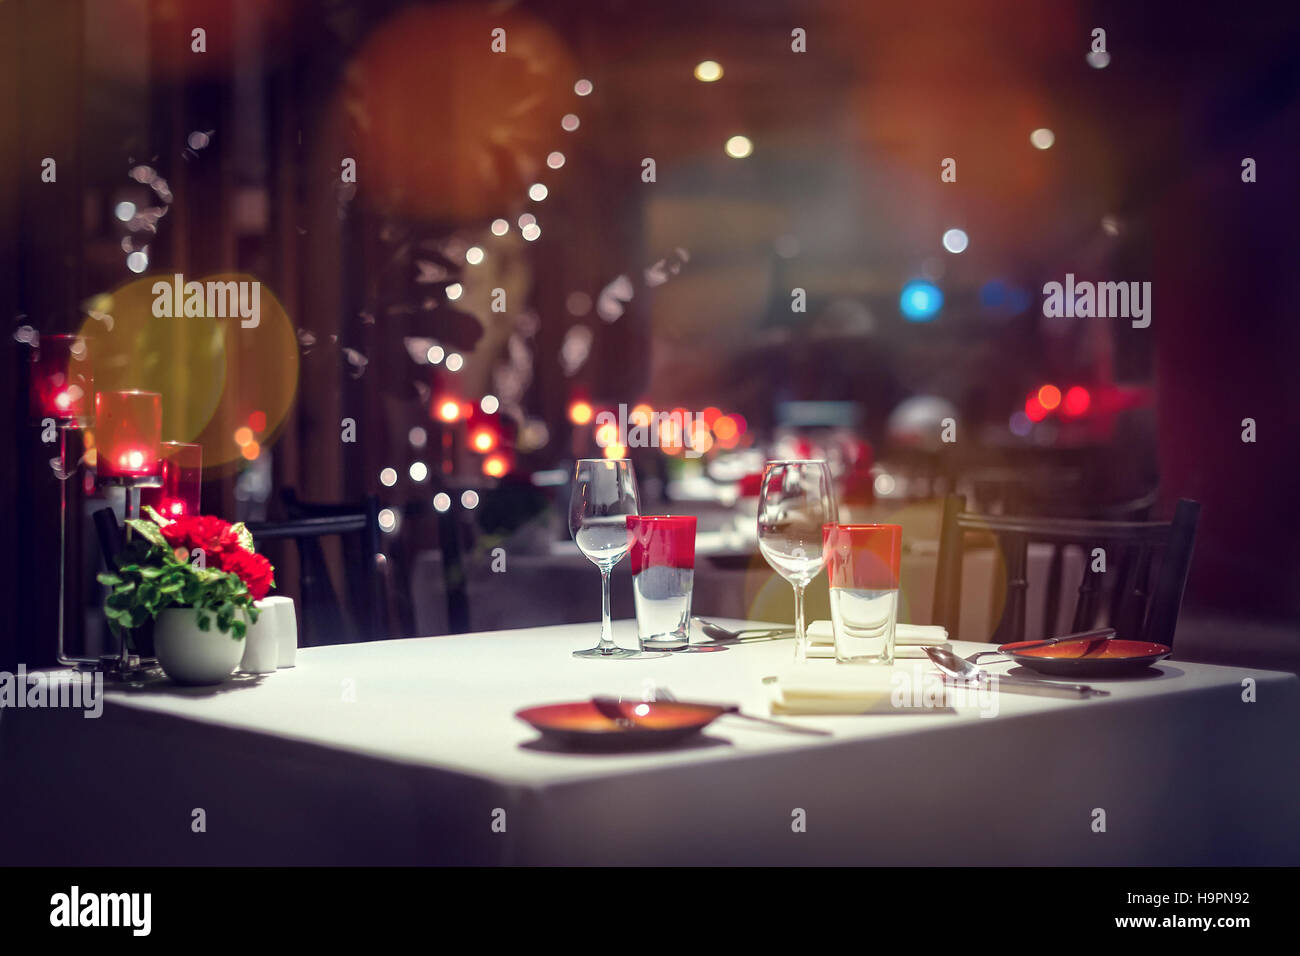 Romantisches Abendessen Setup oder Urlaub Tischdekoration Einstellung, rot mit Candle-light. Stockfoto